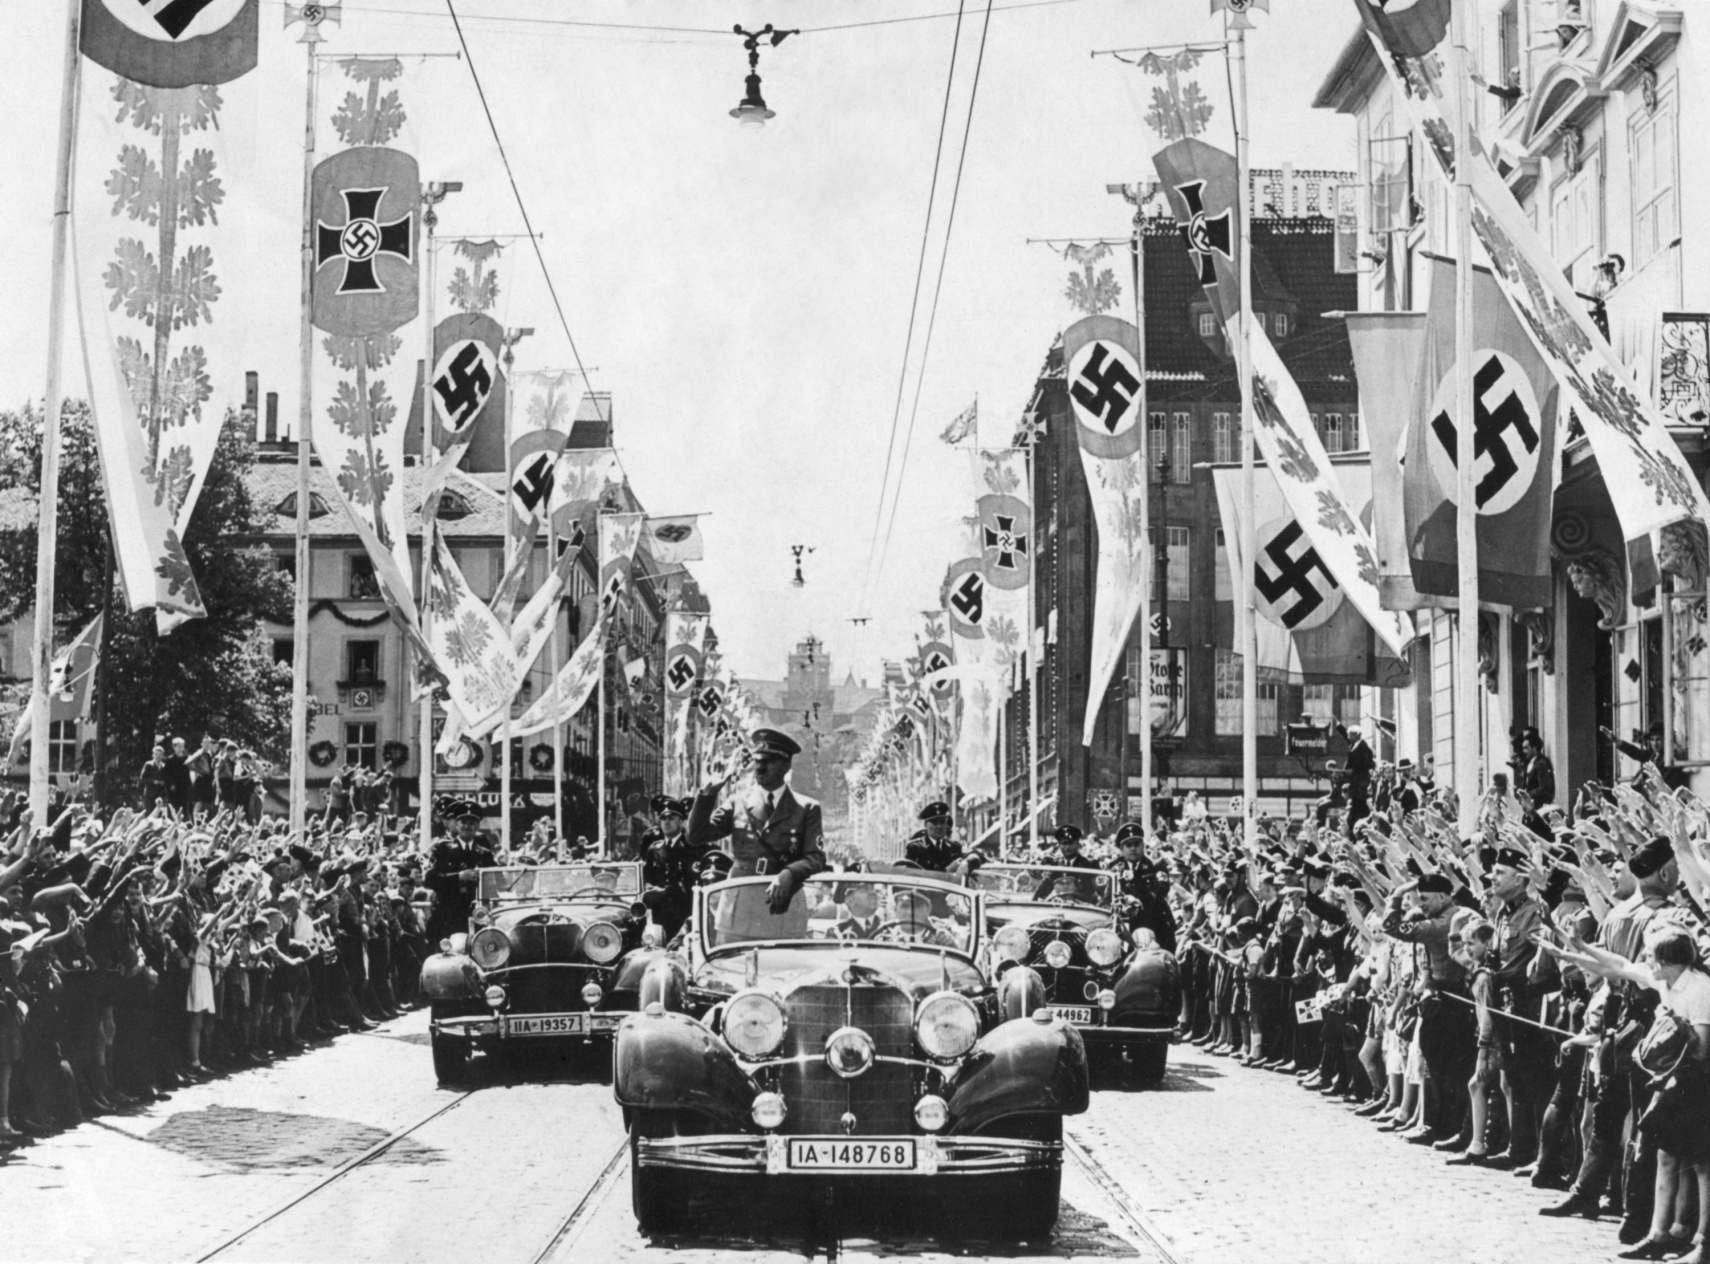 Адолф Хитлер мафтајќи со толпата од својот автомобил на чело на парадата. Улиците се украсени со различни транспаренти со свастика. Ca. 1934-38. Хитлер имал згодна, но лажна причина да го избере симболот свастика за нивна ознака. Ја користеле ариевските номади од Индија во вториот милениум. Според нацистичката теорија, Аријците биле со германско потекло, а Хитлер заклучил дека свастиката била вечно антисемитска.